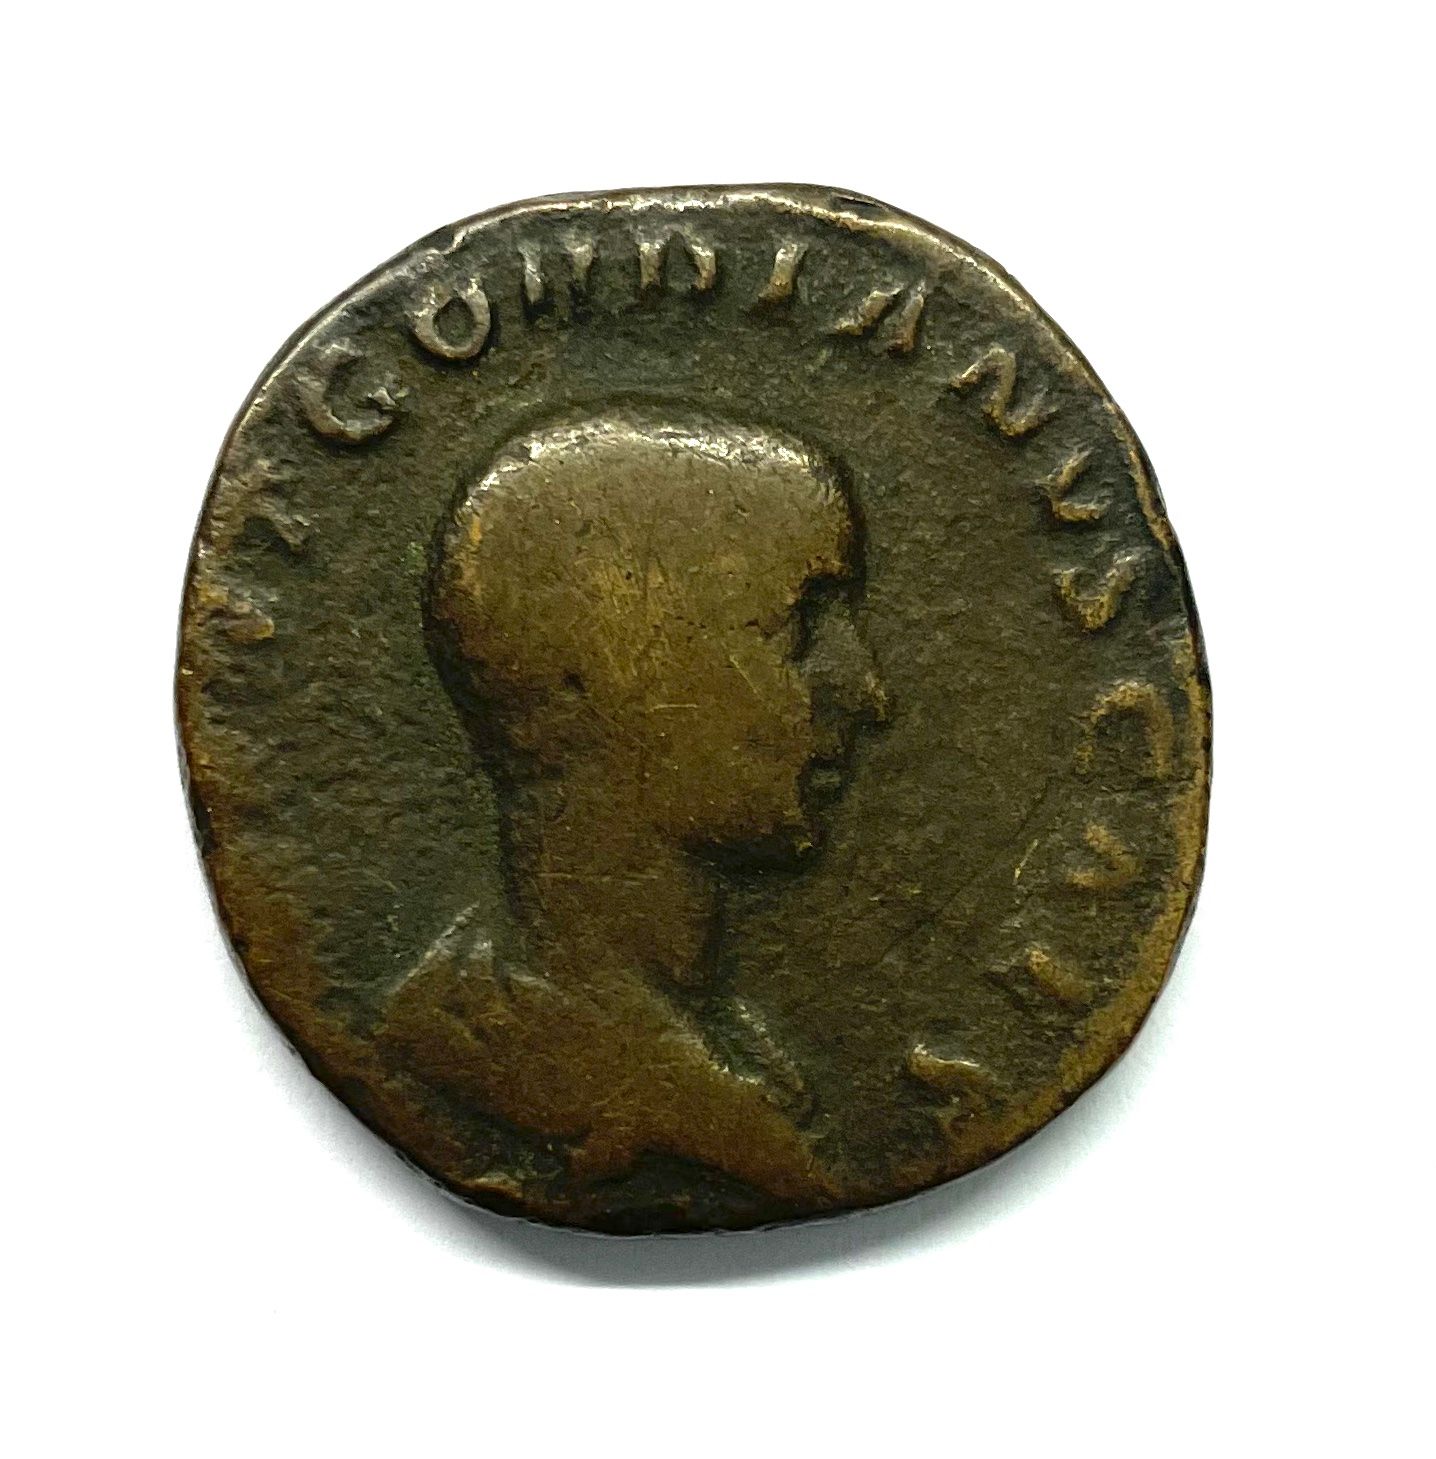 Null Rom - Caracalla (211-217)

A Sesterz 

A: Nackter Kopf rechts von Caracalla&hellip;